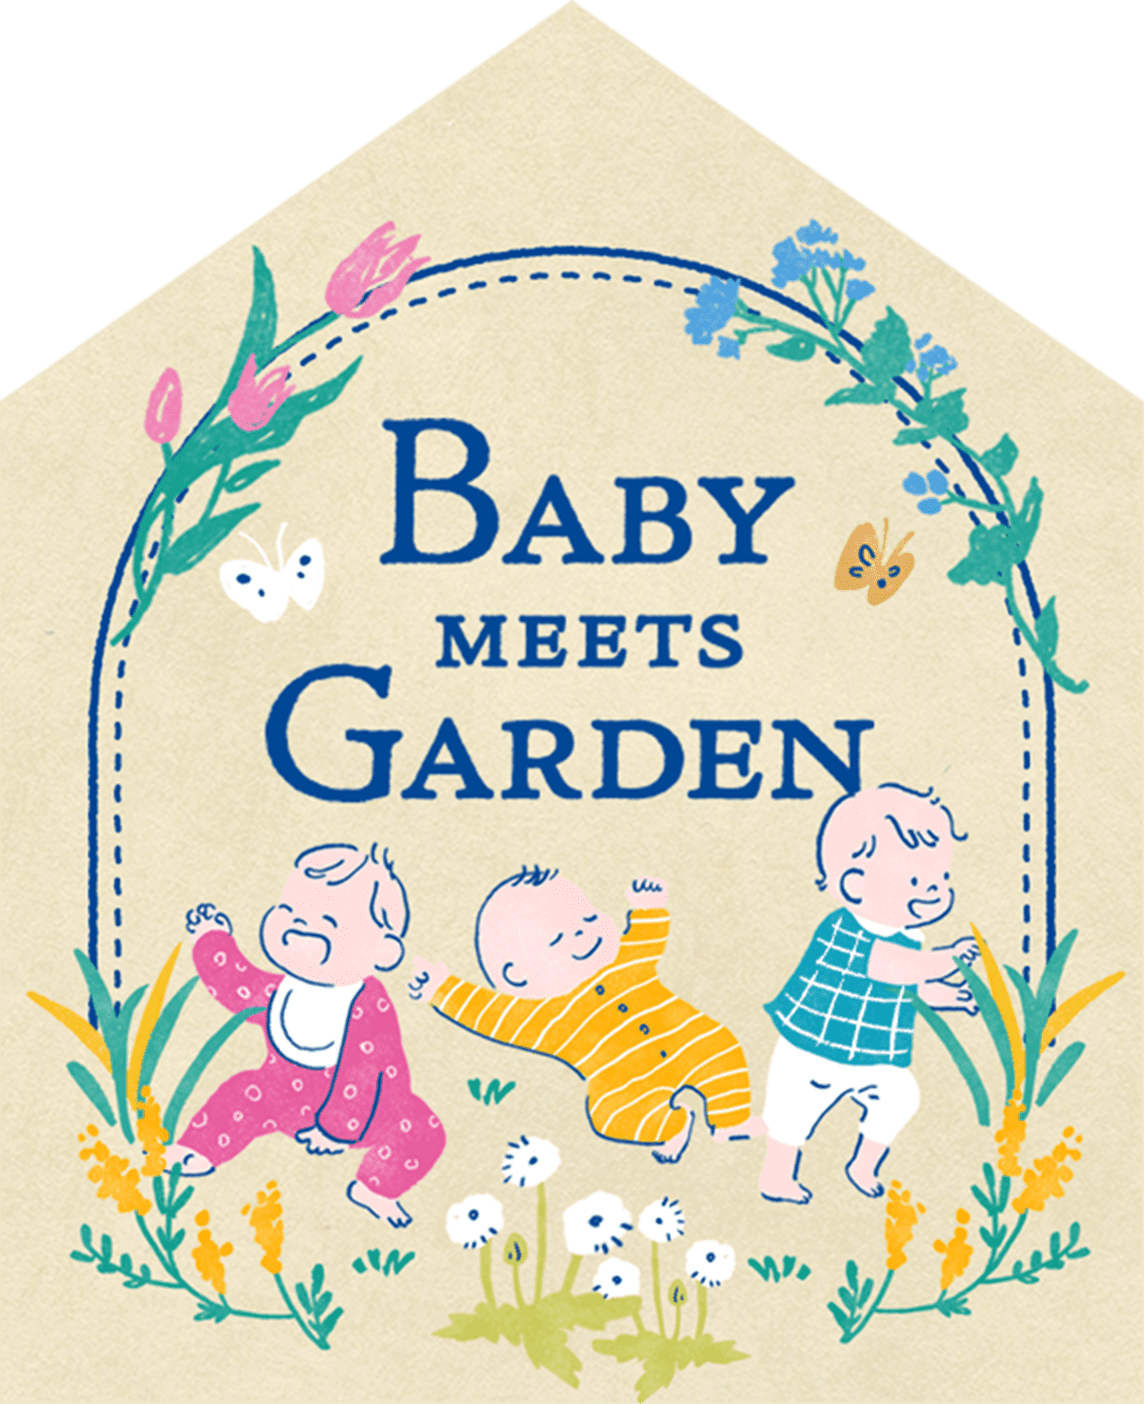 Baby meets Garden